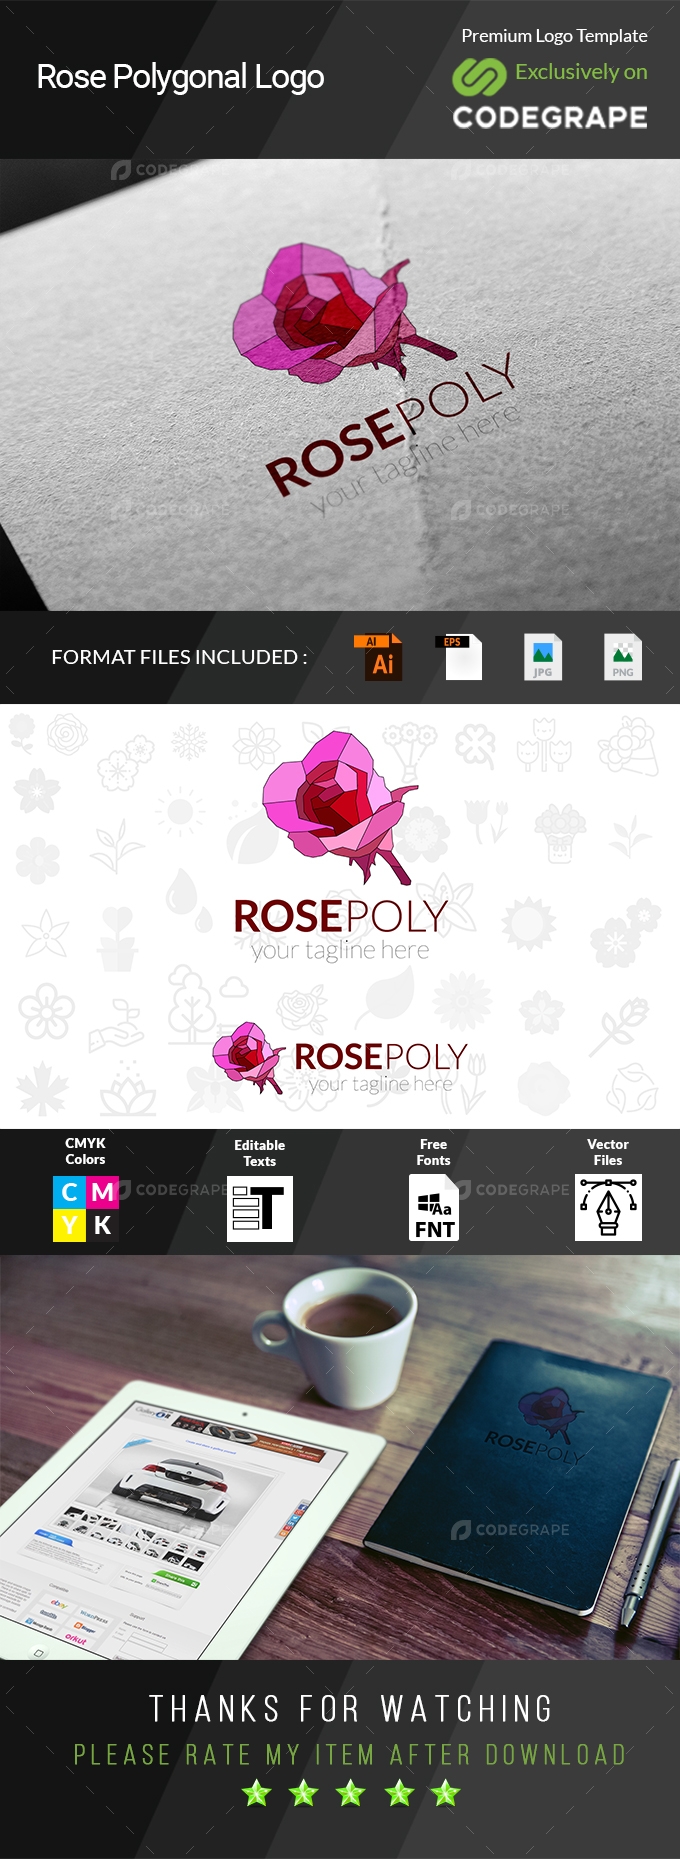 Rose Polygonal Logo